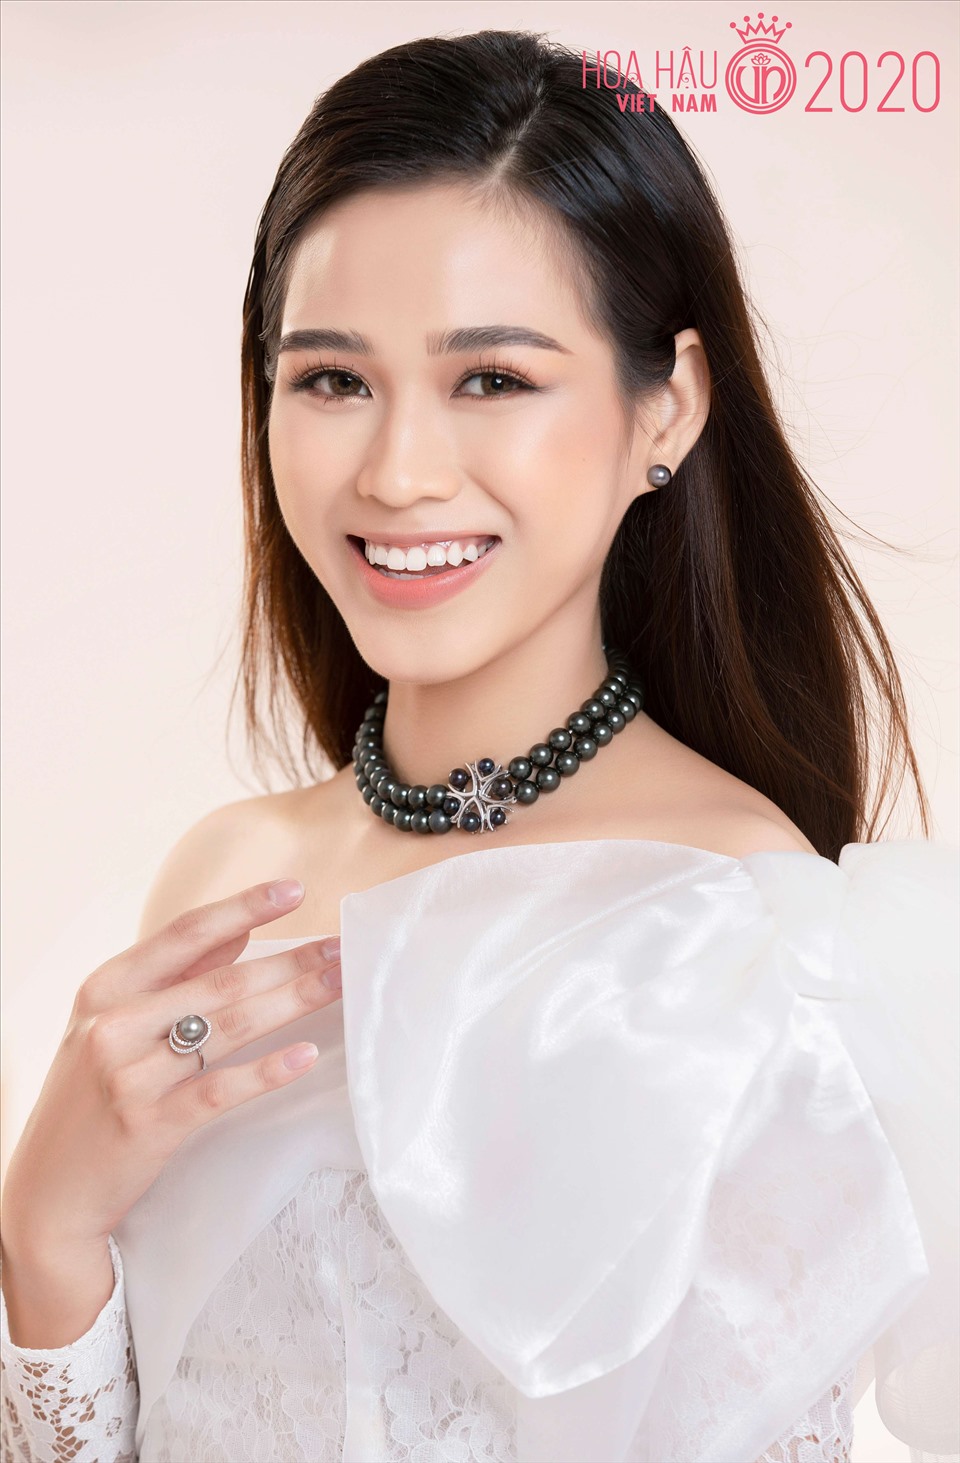 Không phải là thí sinh Hoa hậu Việt Nam 2020 nhận được sự chú ý ngay từ đầu cuộc thi nhưng Đỗ Thị Hà đã có những phần thể hiện xuất sắc trong chặng đường tới chung kết. Ảnh: NVCC.